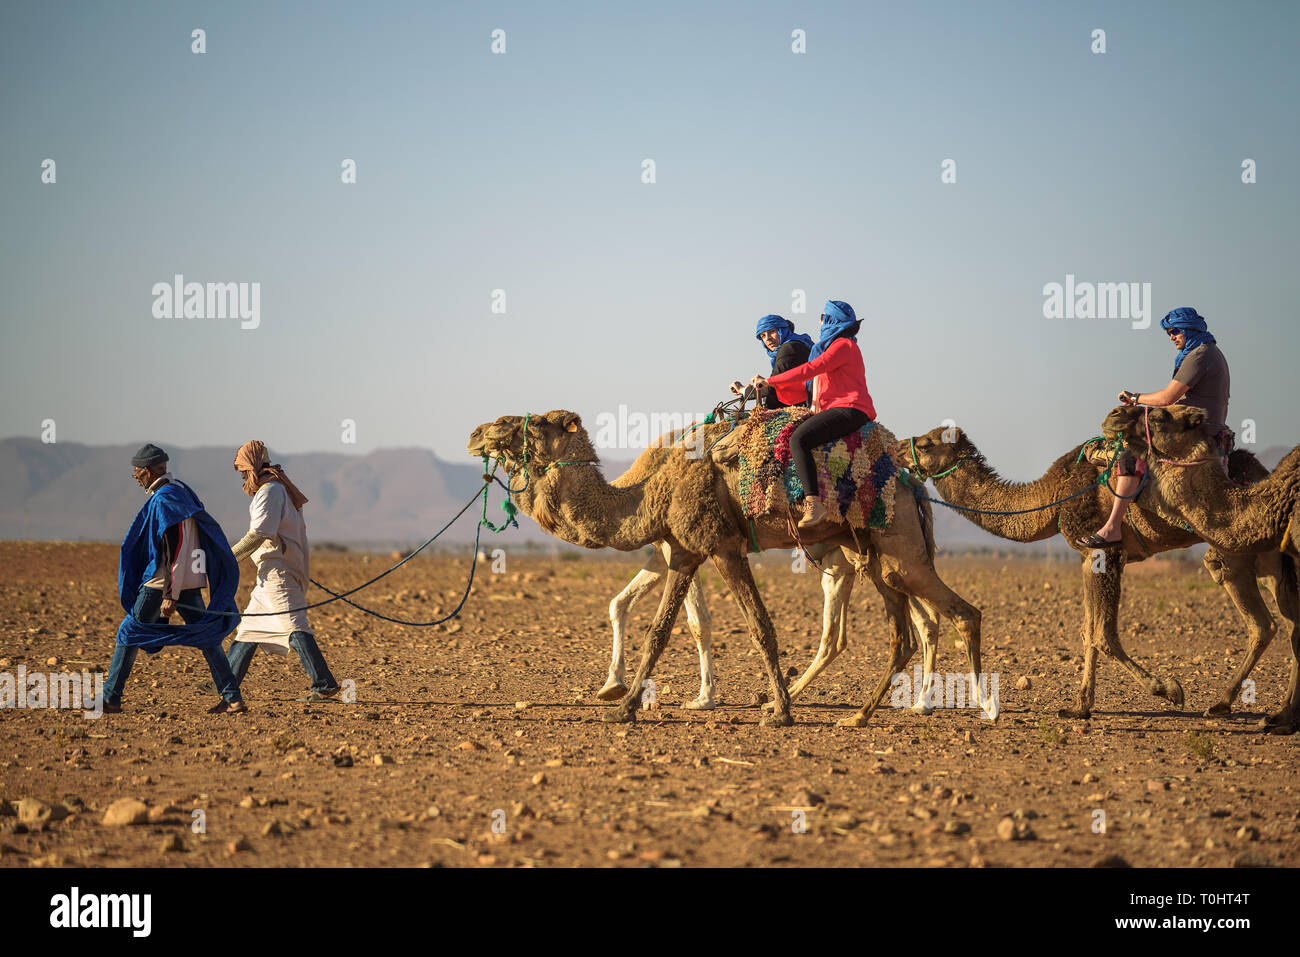 Camel caravan with tourists going through the Sahara Desert Stock Photo